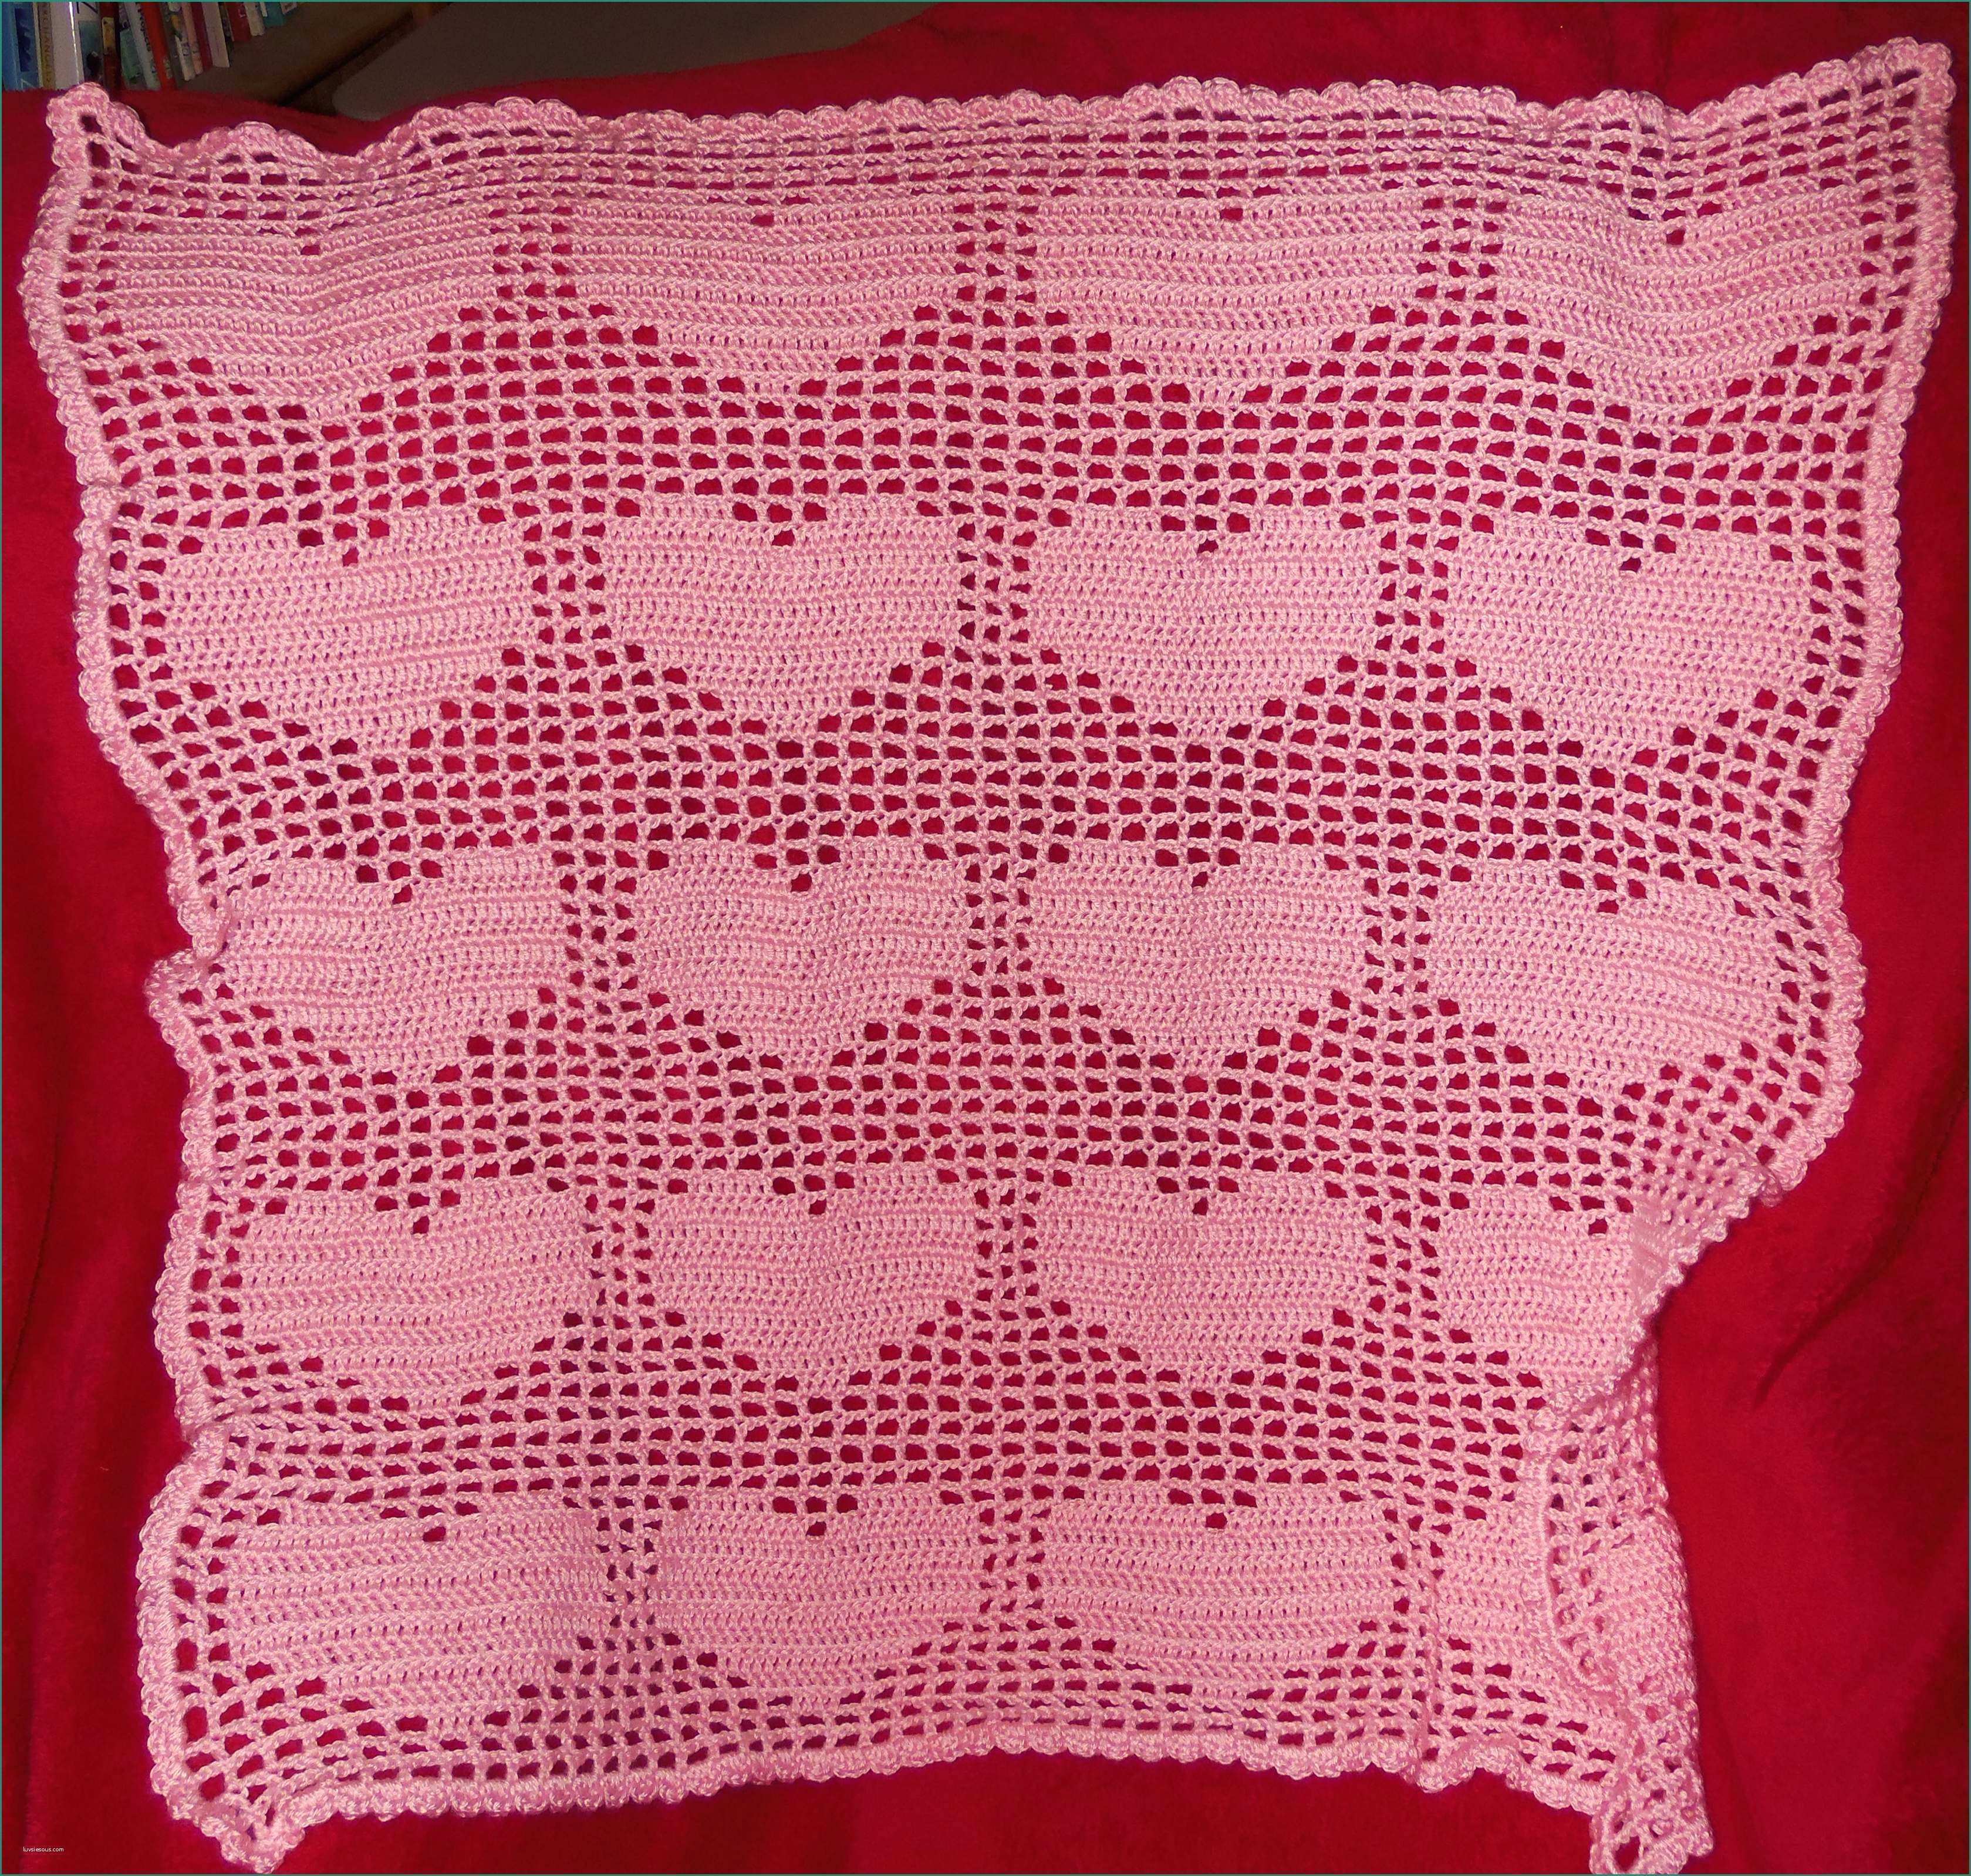 Lo Spazio Di Lilla Copertine Neonato E Colorful Crochet Filet Heart Afghan Pattern Picture Collection